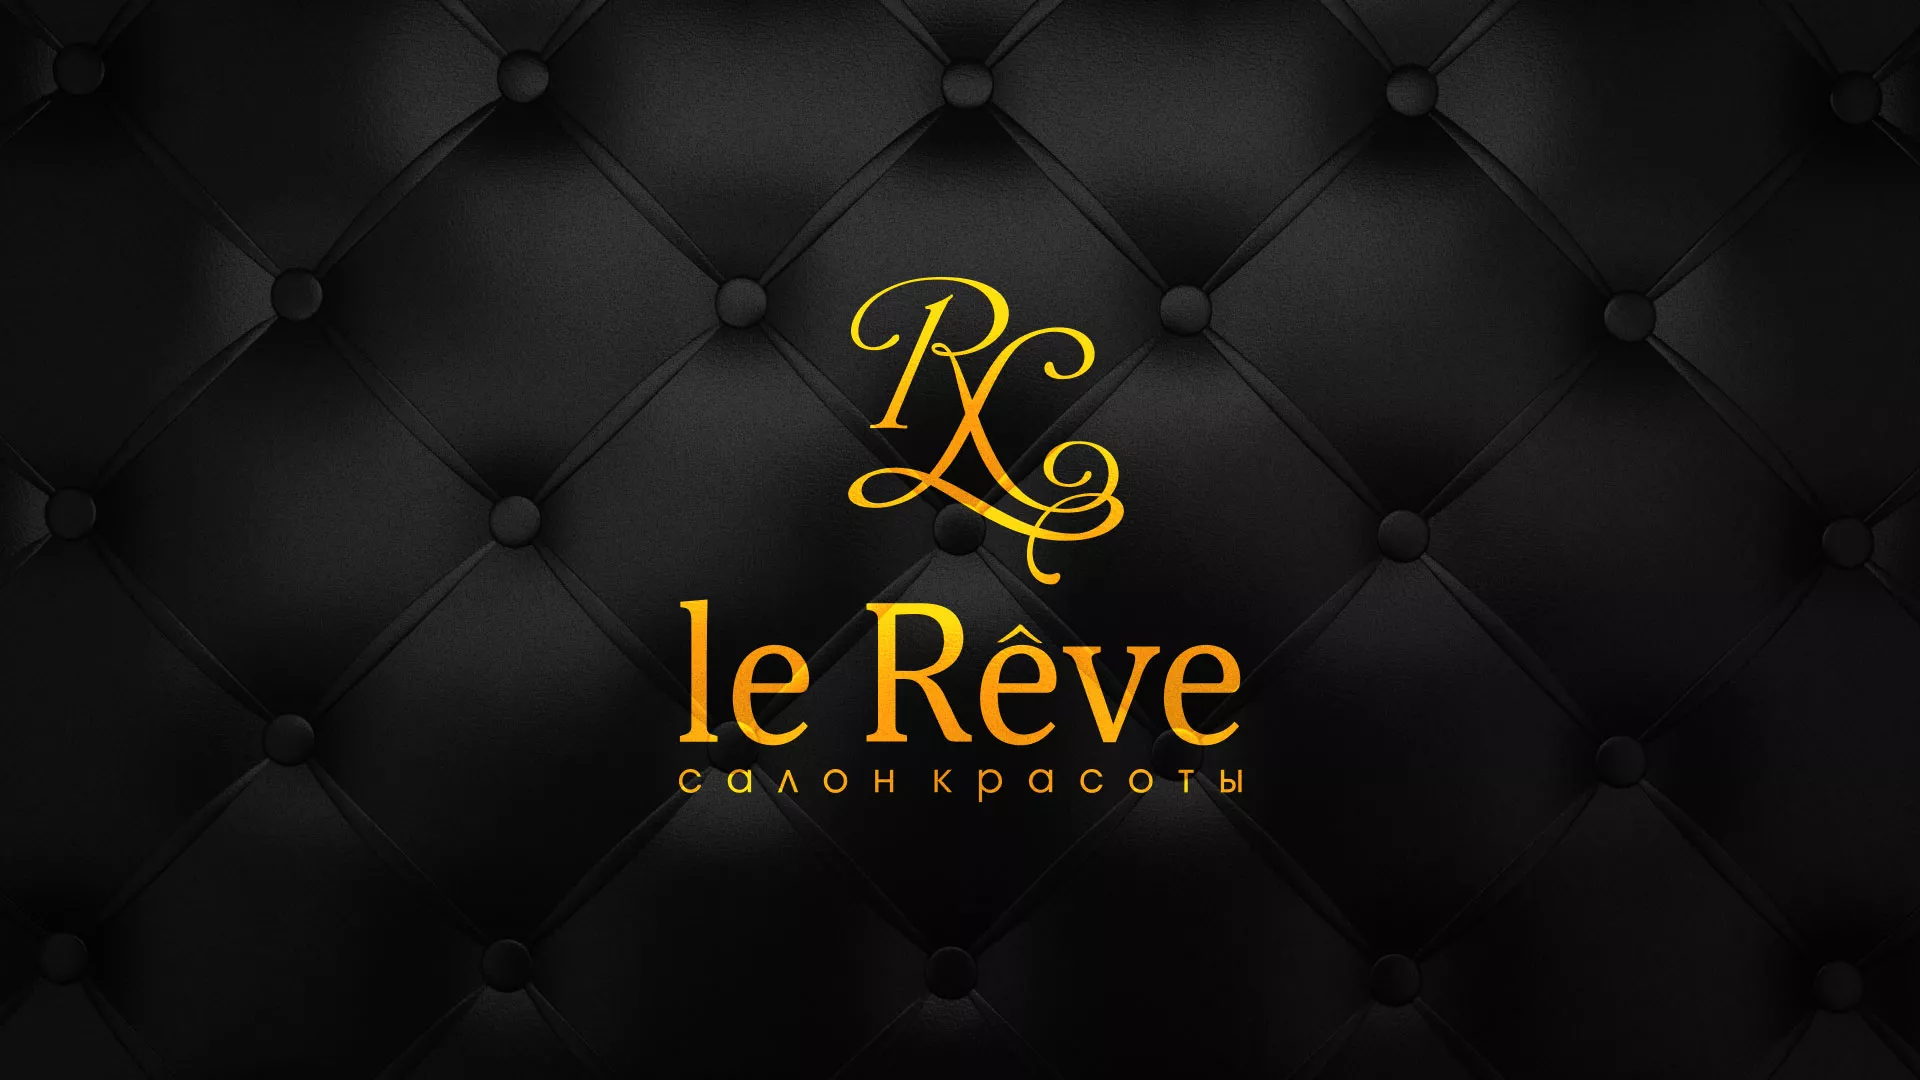 Разработка листовок для салона красоты «Le Reve» в Соколе